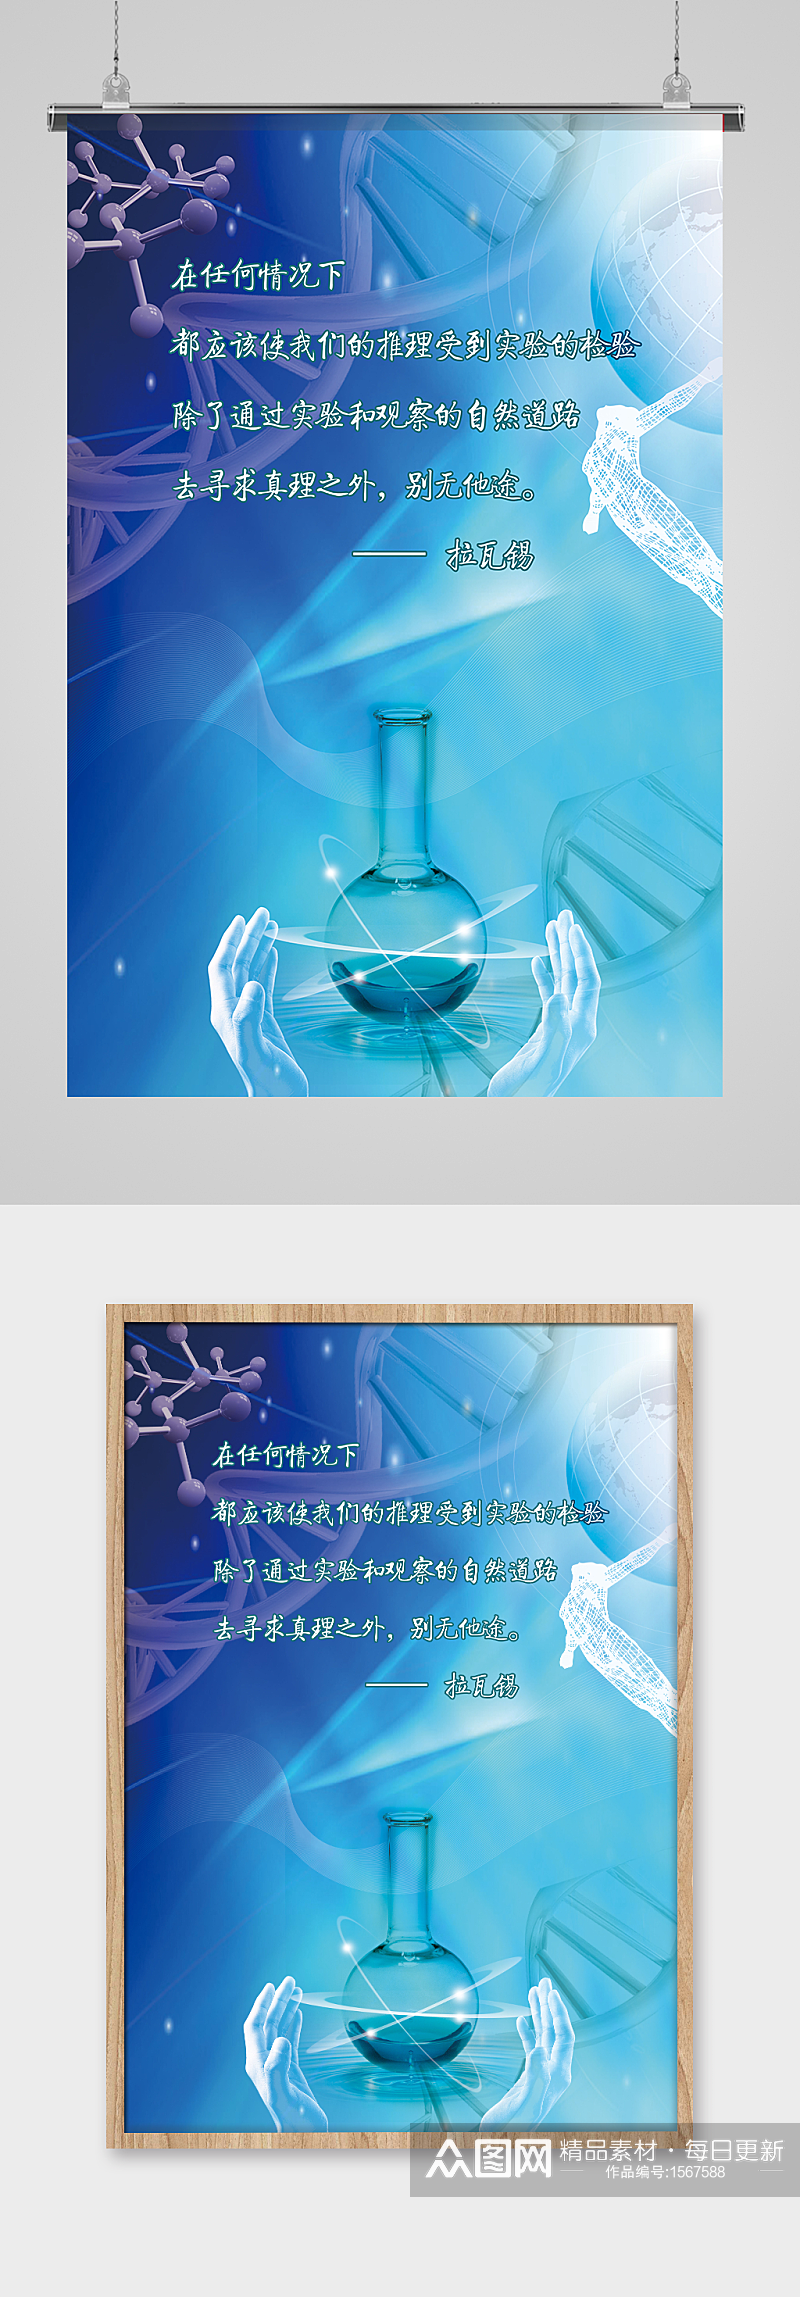 蓝色科技化学分子实验海报设计素材